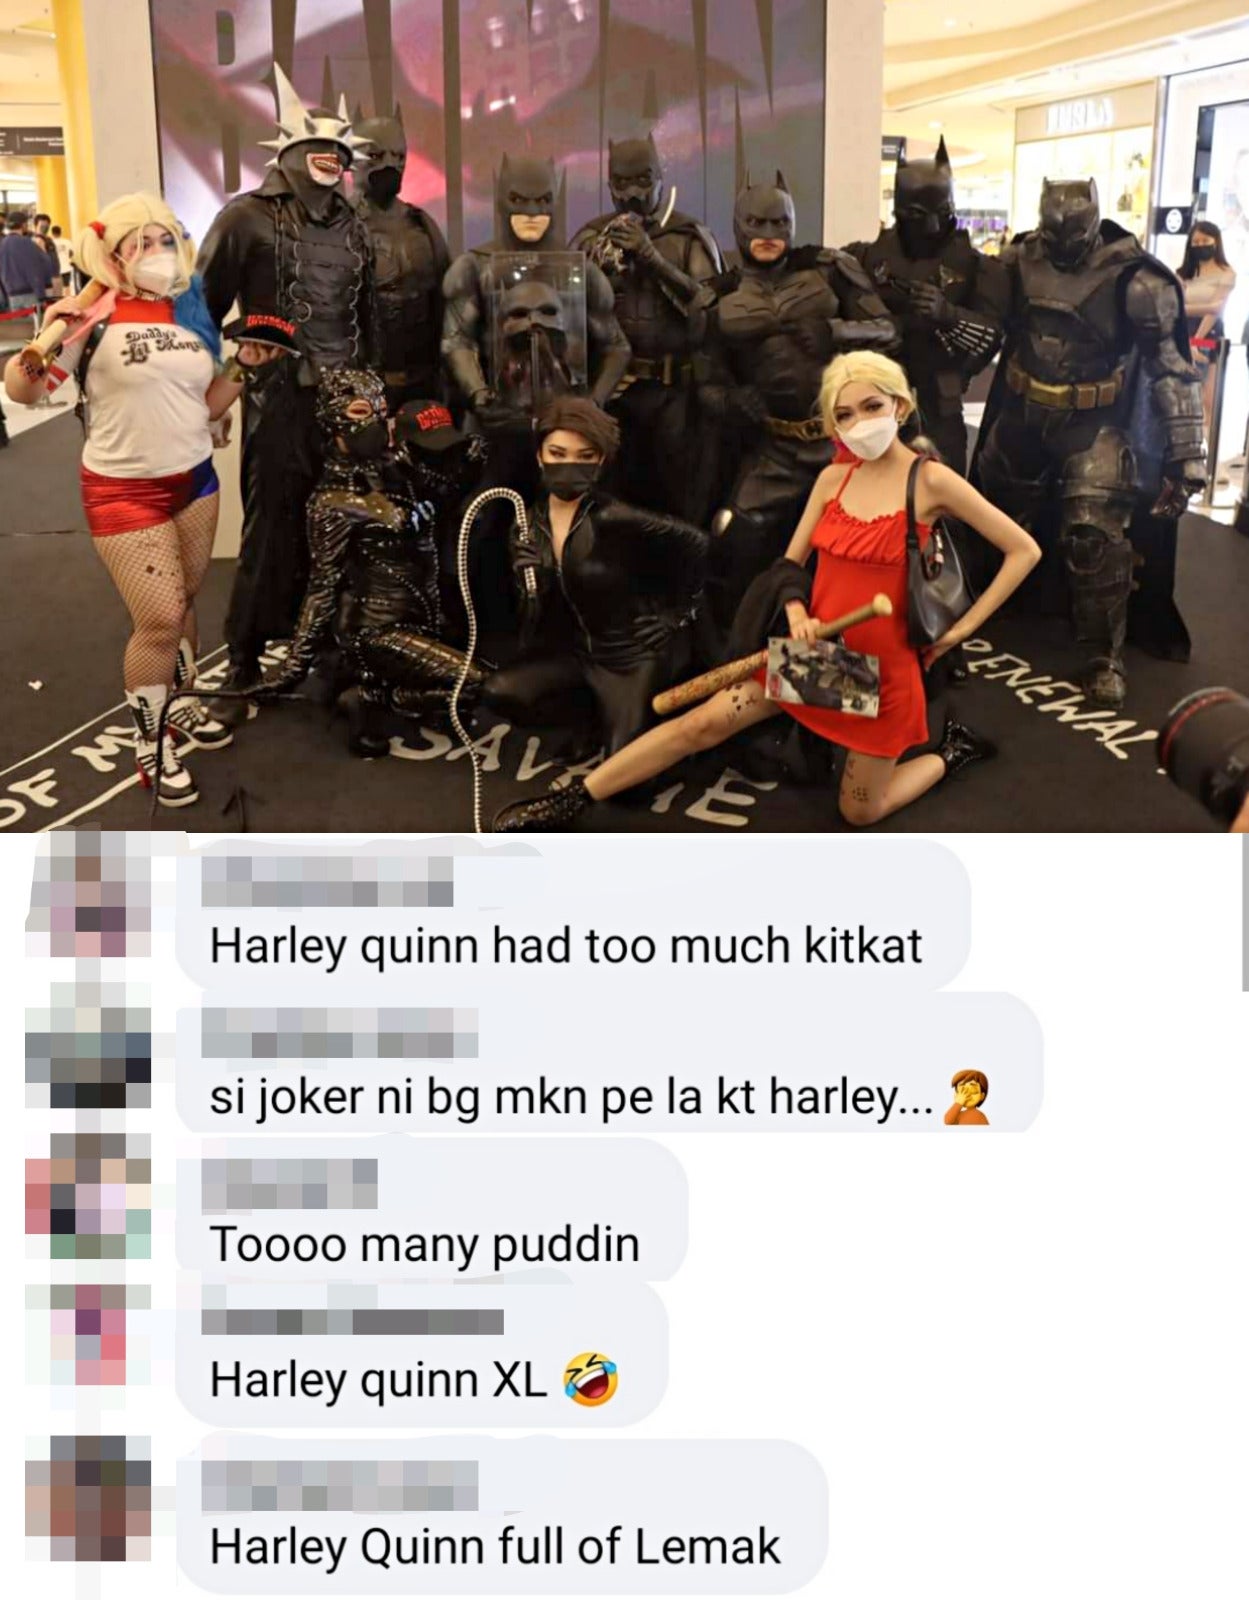 Rin Kizawa as Harley Quinn photo posted at TGV Cinemas FB